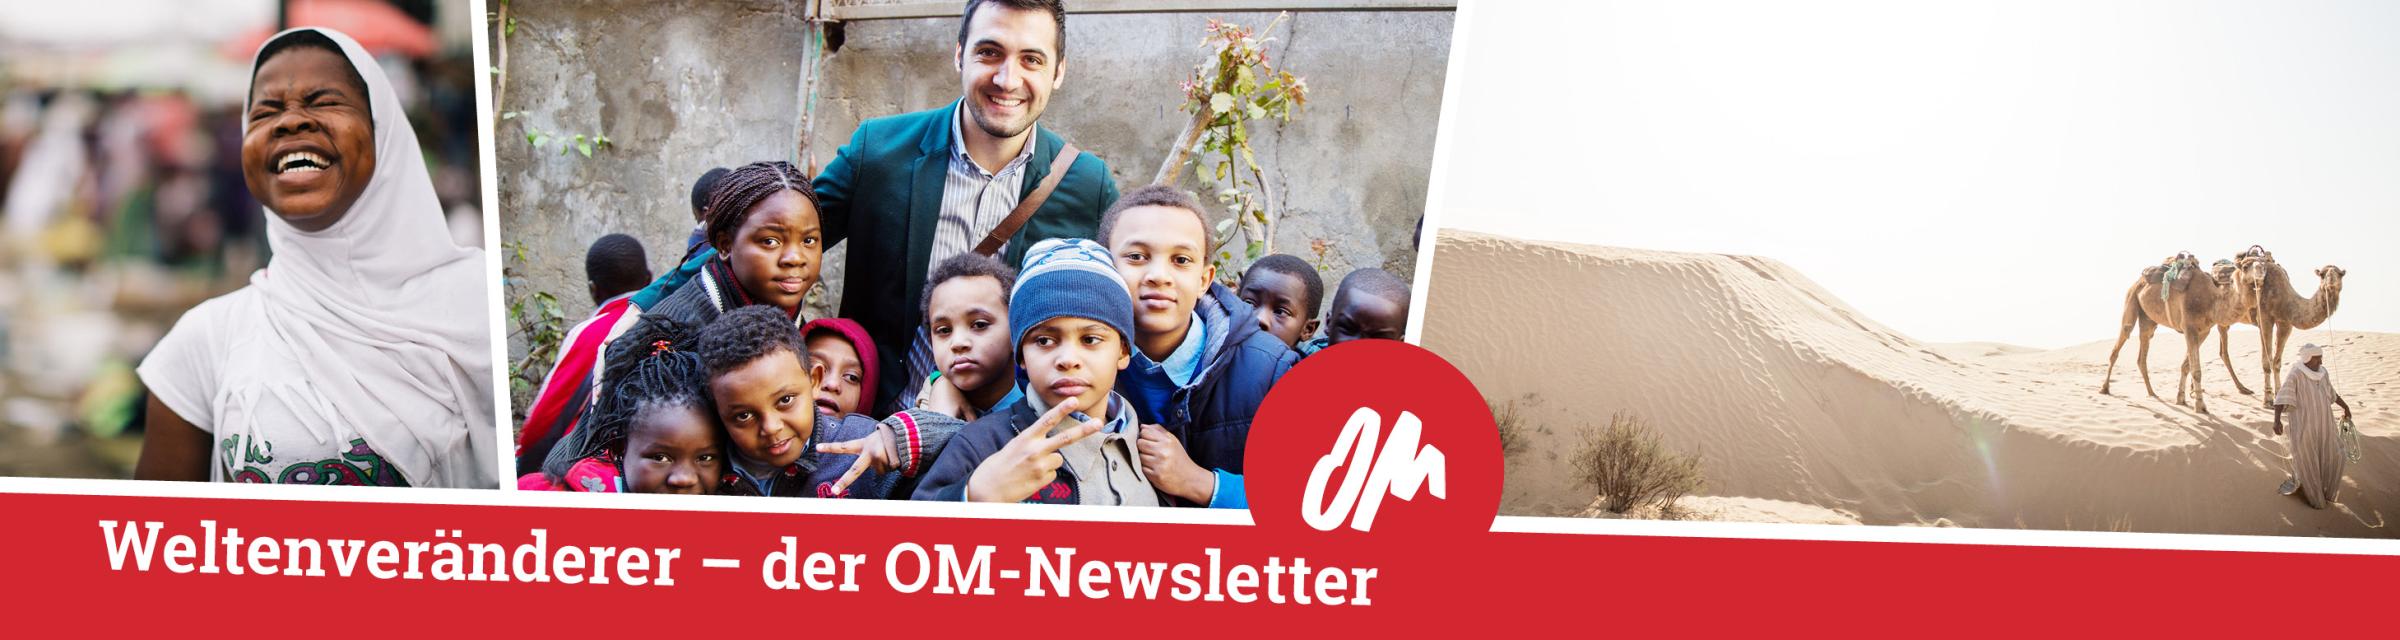 Freudige Menschen – Einladung den OM-Newsletter #Weltenveränderer zu abonnieren